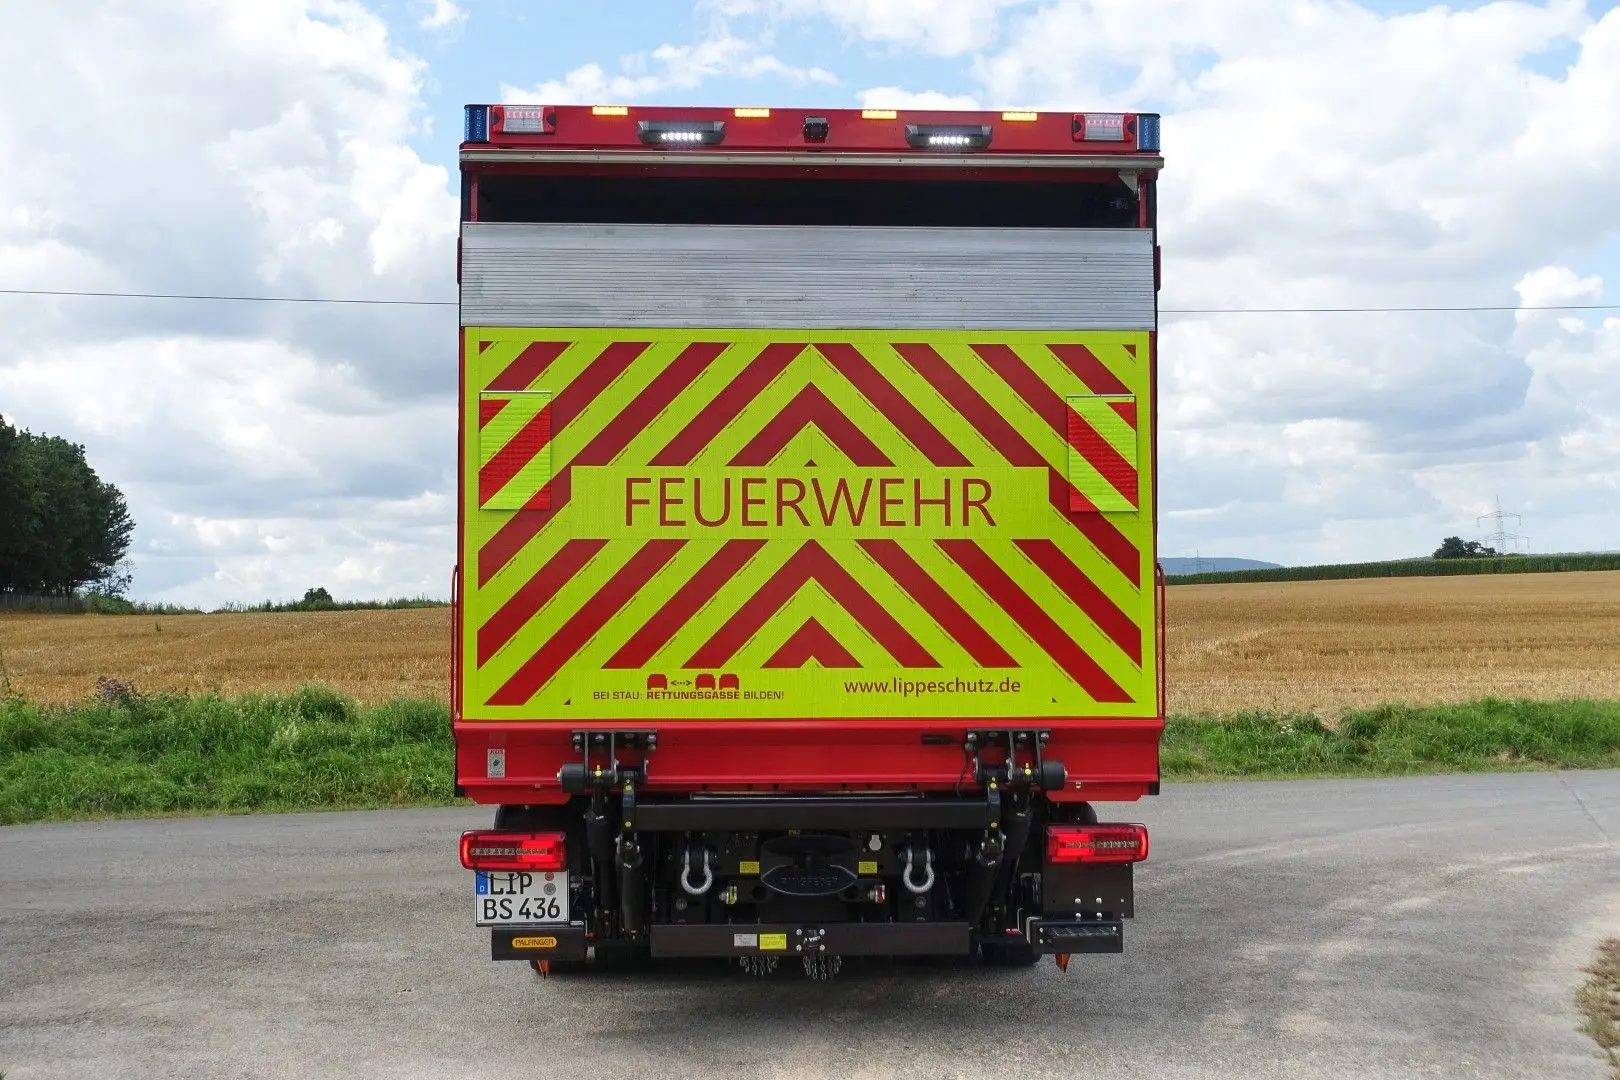 Gerätewagen Feuerwehr GW-L1 Feuerwehr Lippe www.lippeschutz.de